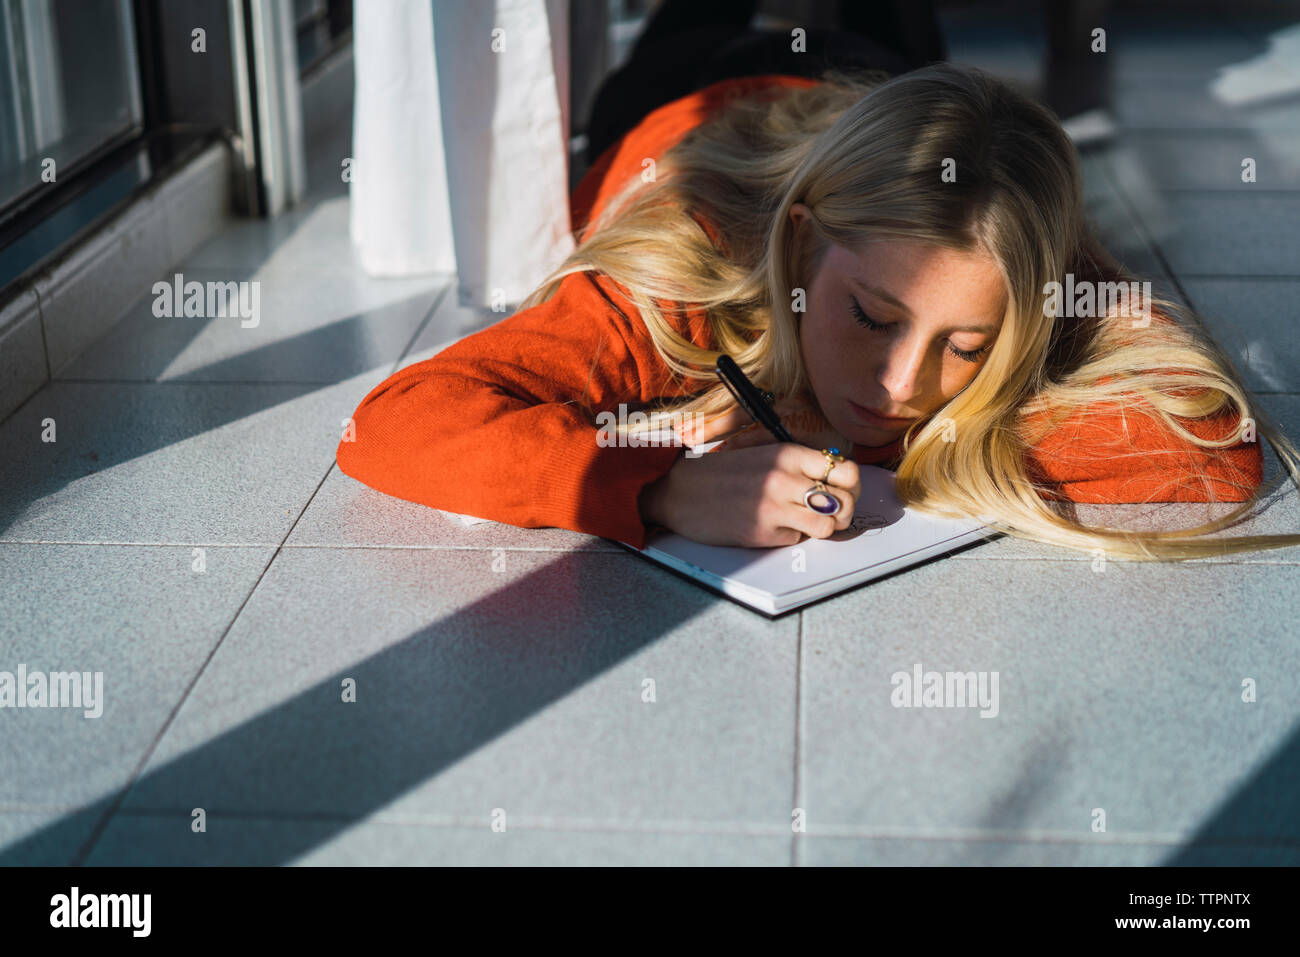 Junge Frau Skizzieren auf Buch, während auf gefliestem Boden zu Hause liegen Stockfoto